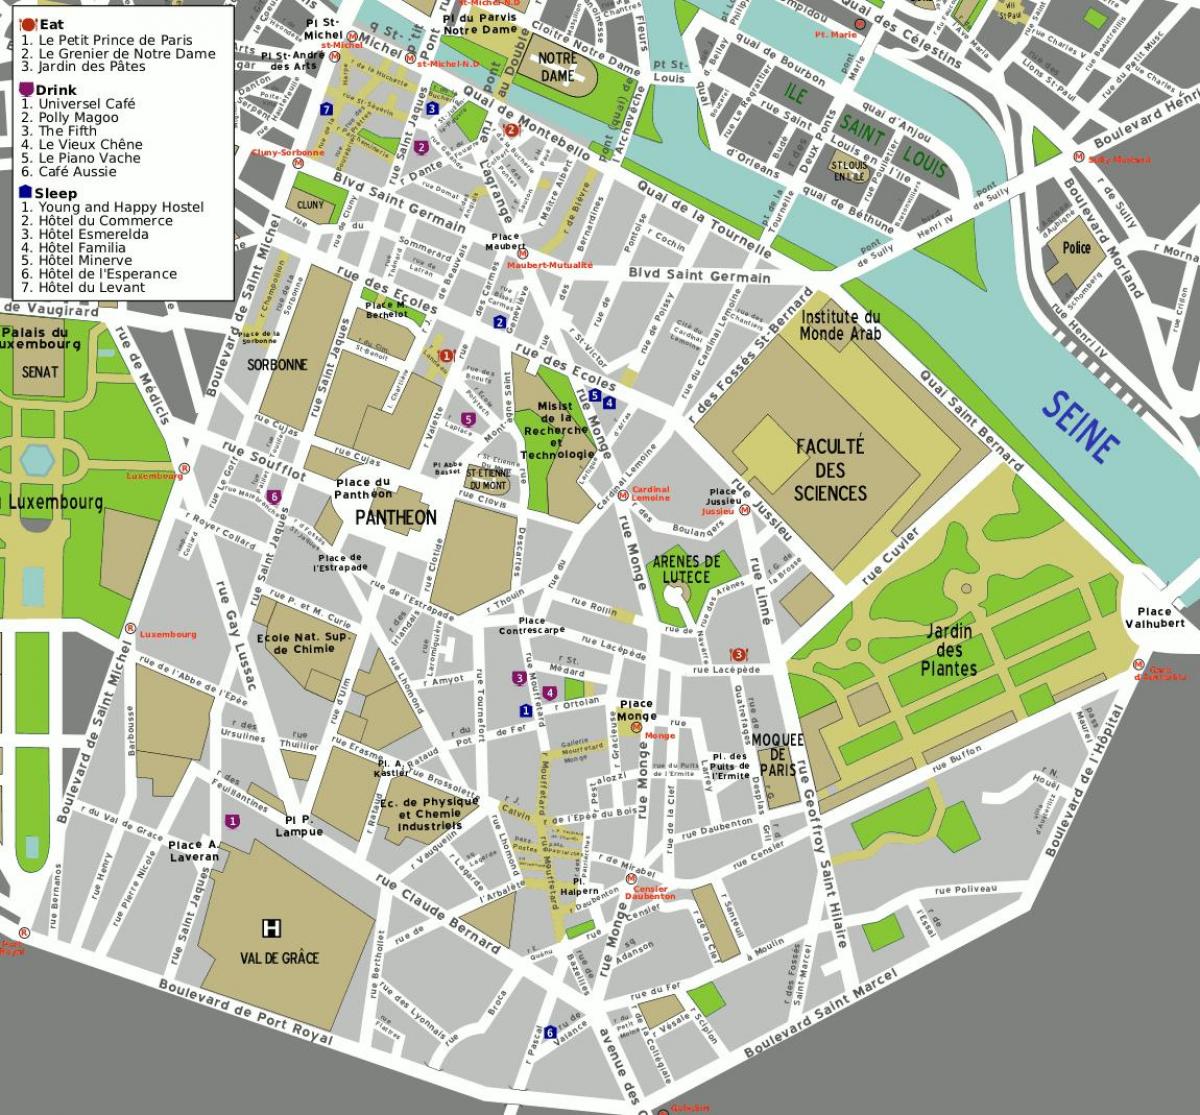 แผนที่ของถนน 5 ตัด arrondissement ของปารีส